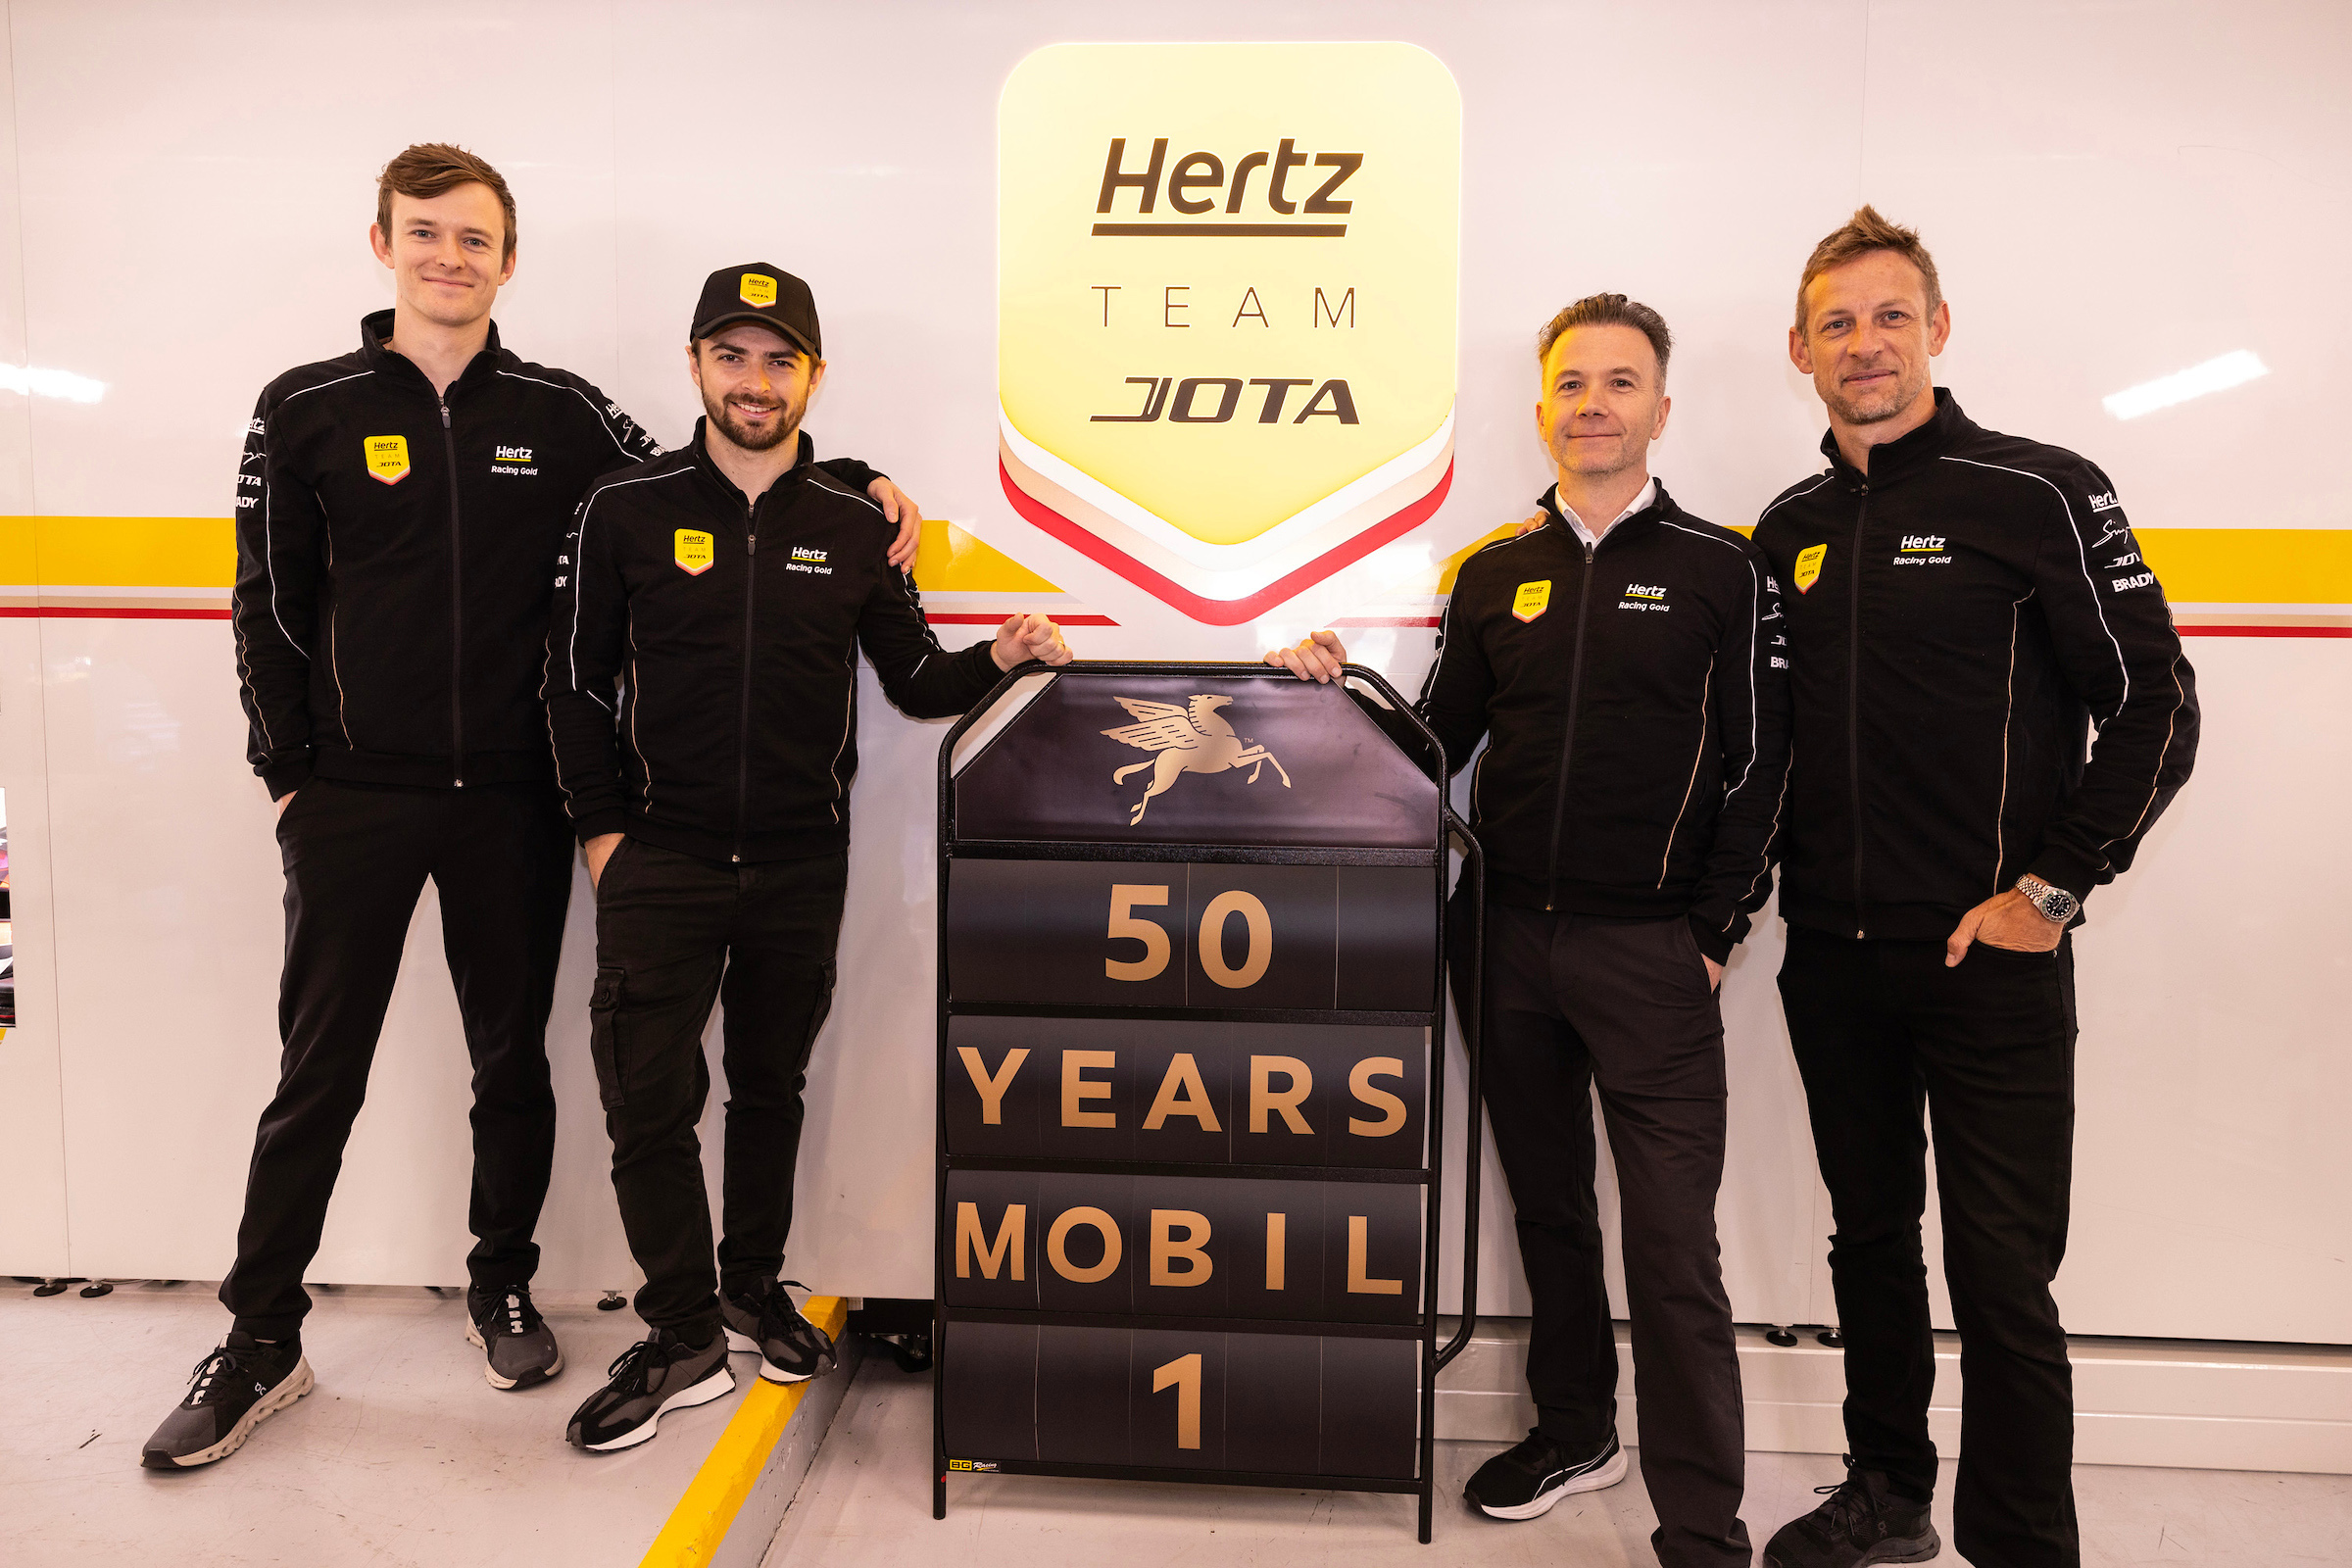 Mobil 1, Dünya Dayanıklılık Şampiyonası’nda Hertz Team JOTA’nın resmi ortağı oldu